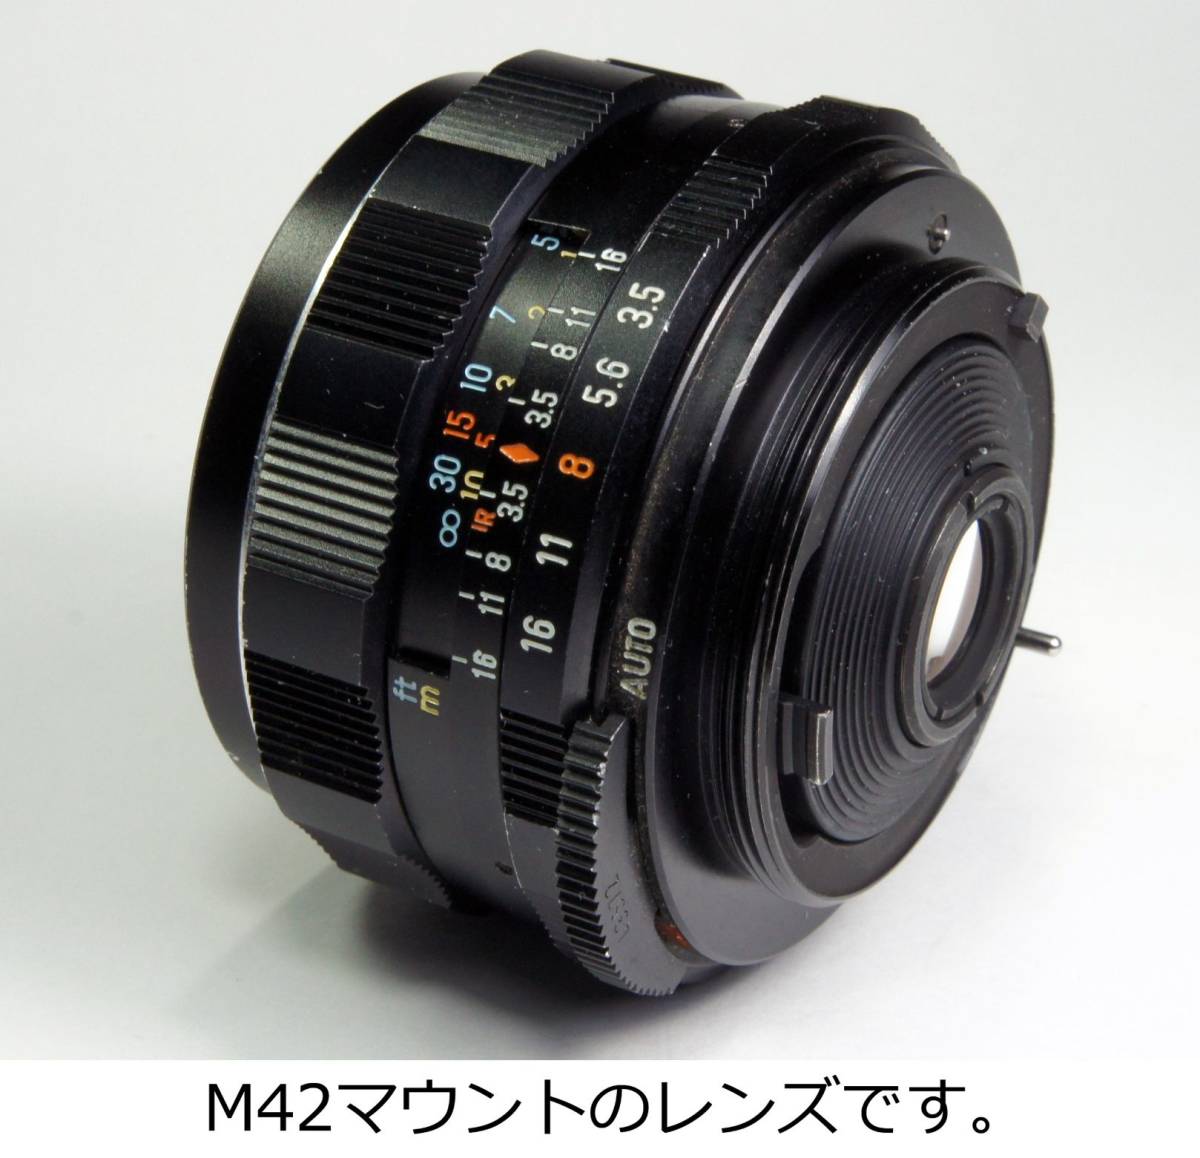 分解整備・実写確認済 Super-Multi-Coated TAKUMAR 35mm F3.5 クリアな青空描写が美しい広角オールドレンズ 操作感も良好【送料520円】_画像4